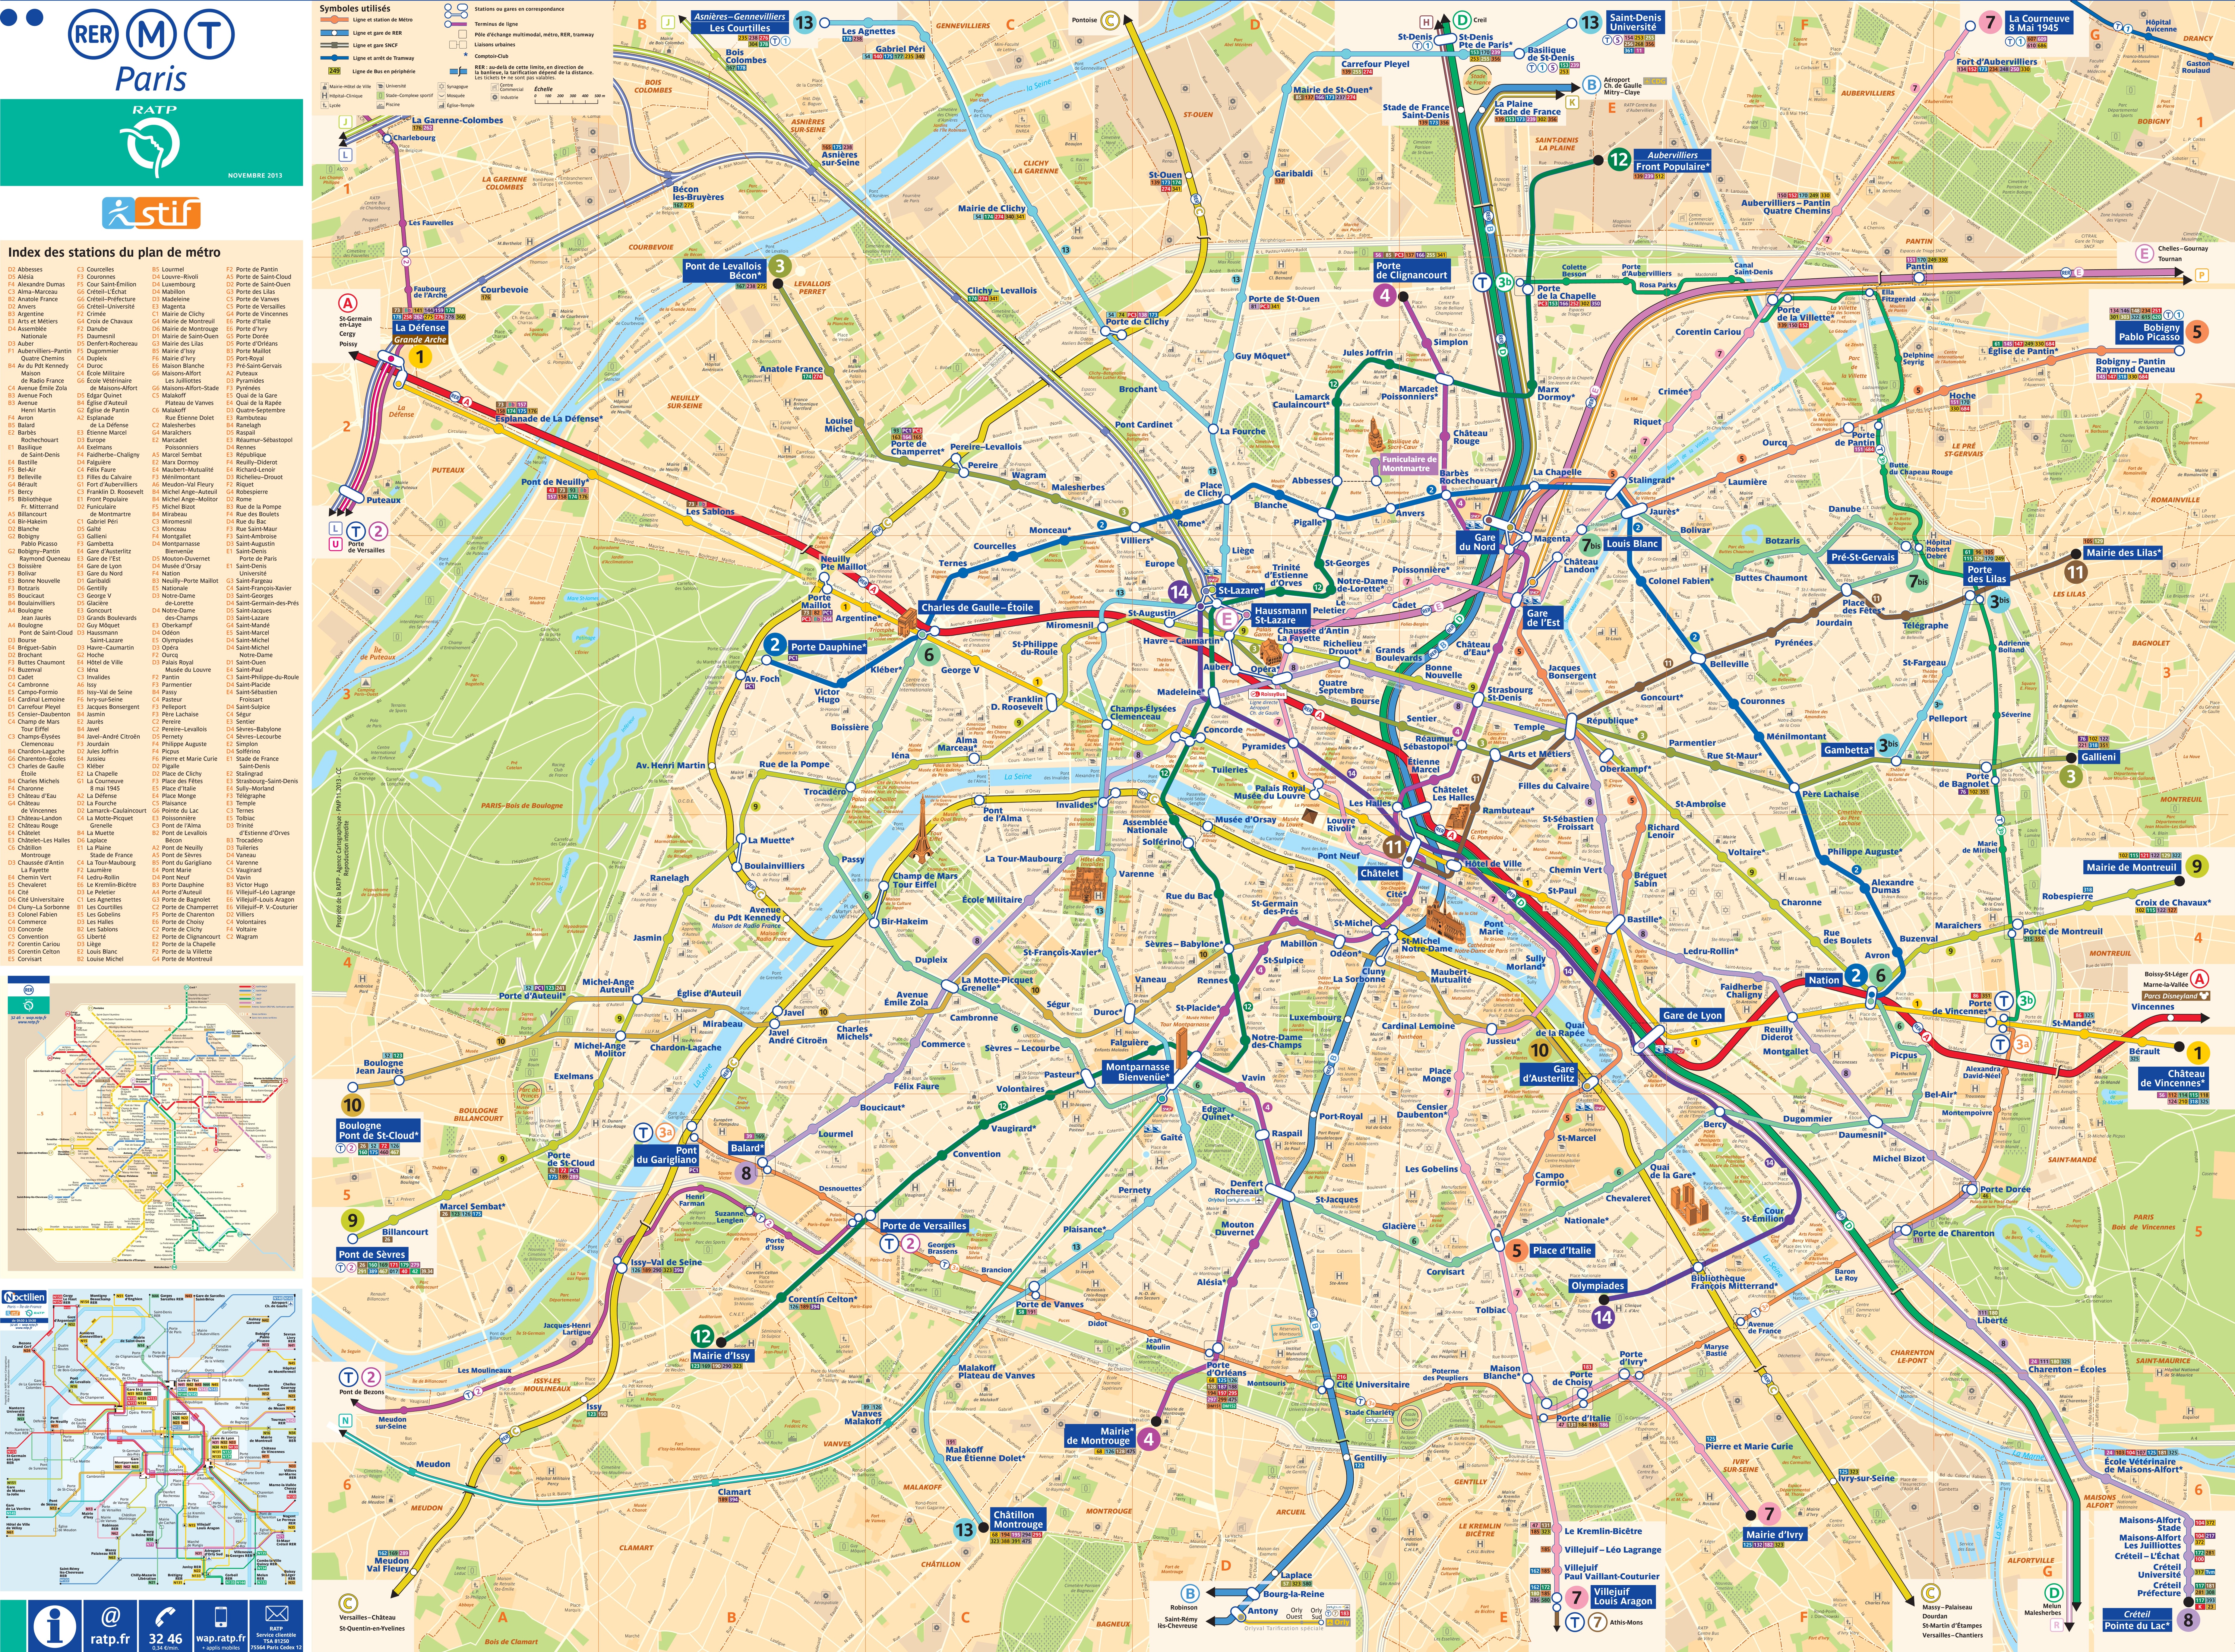 Paris Maps | France | Maps of Paris ﻿